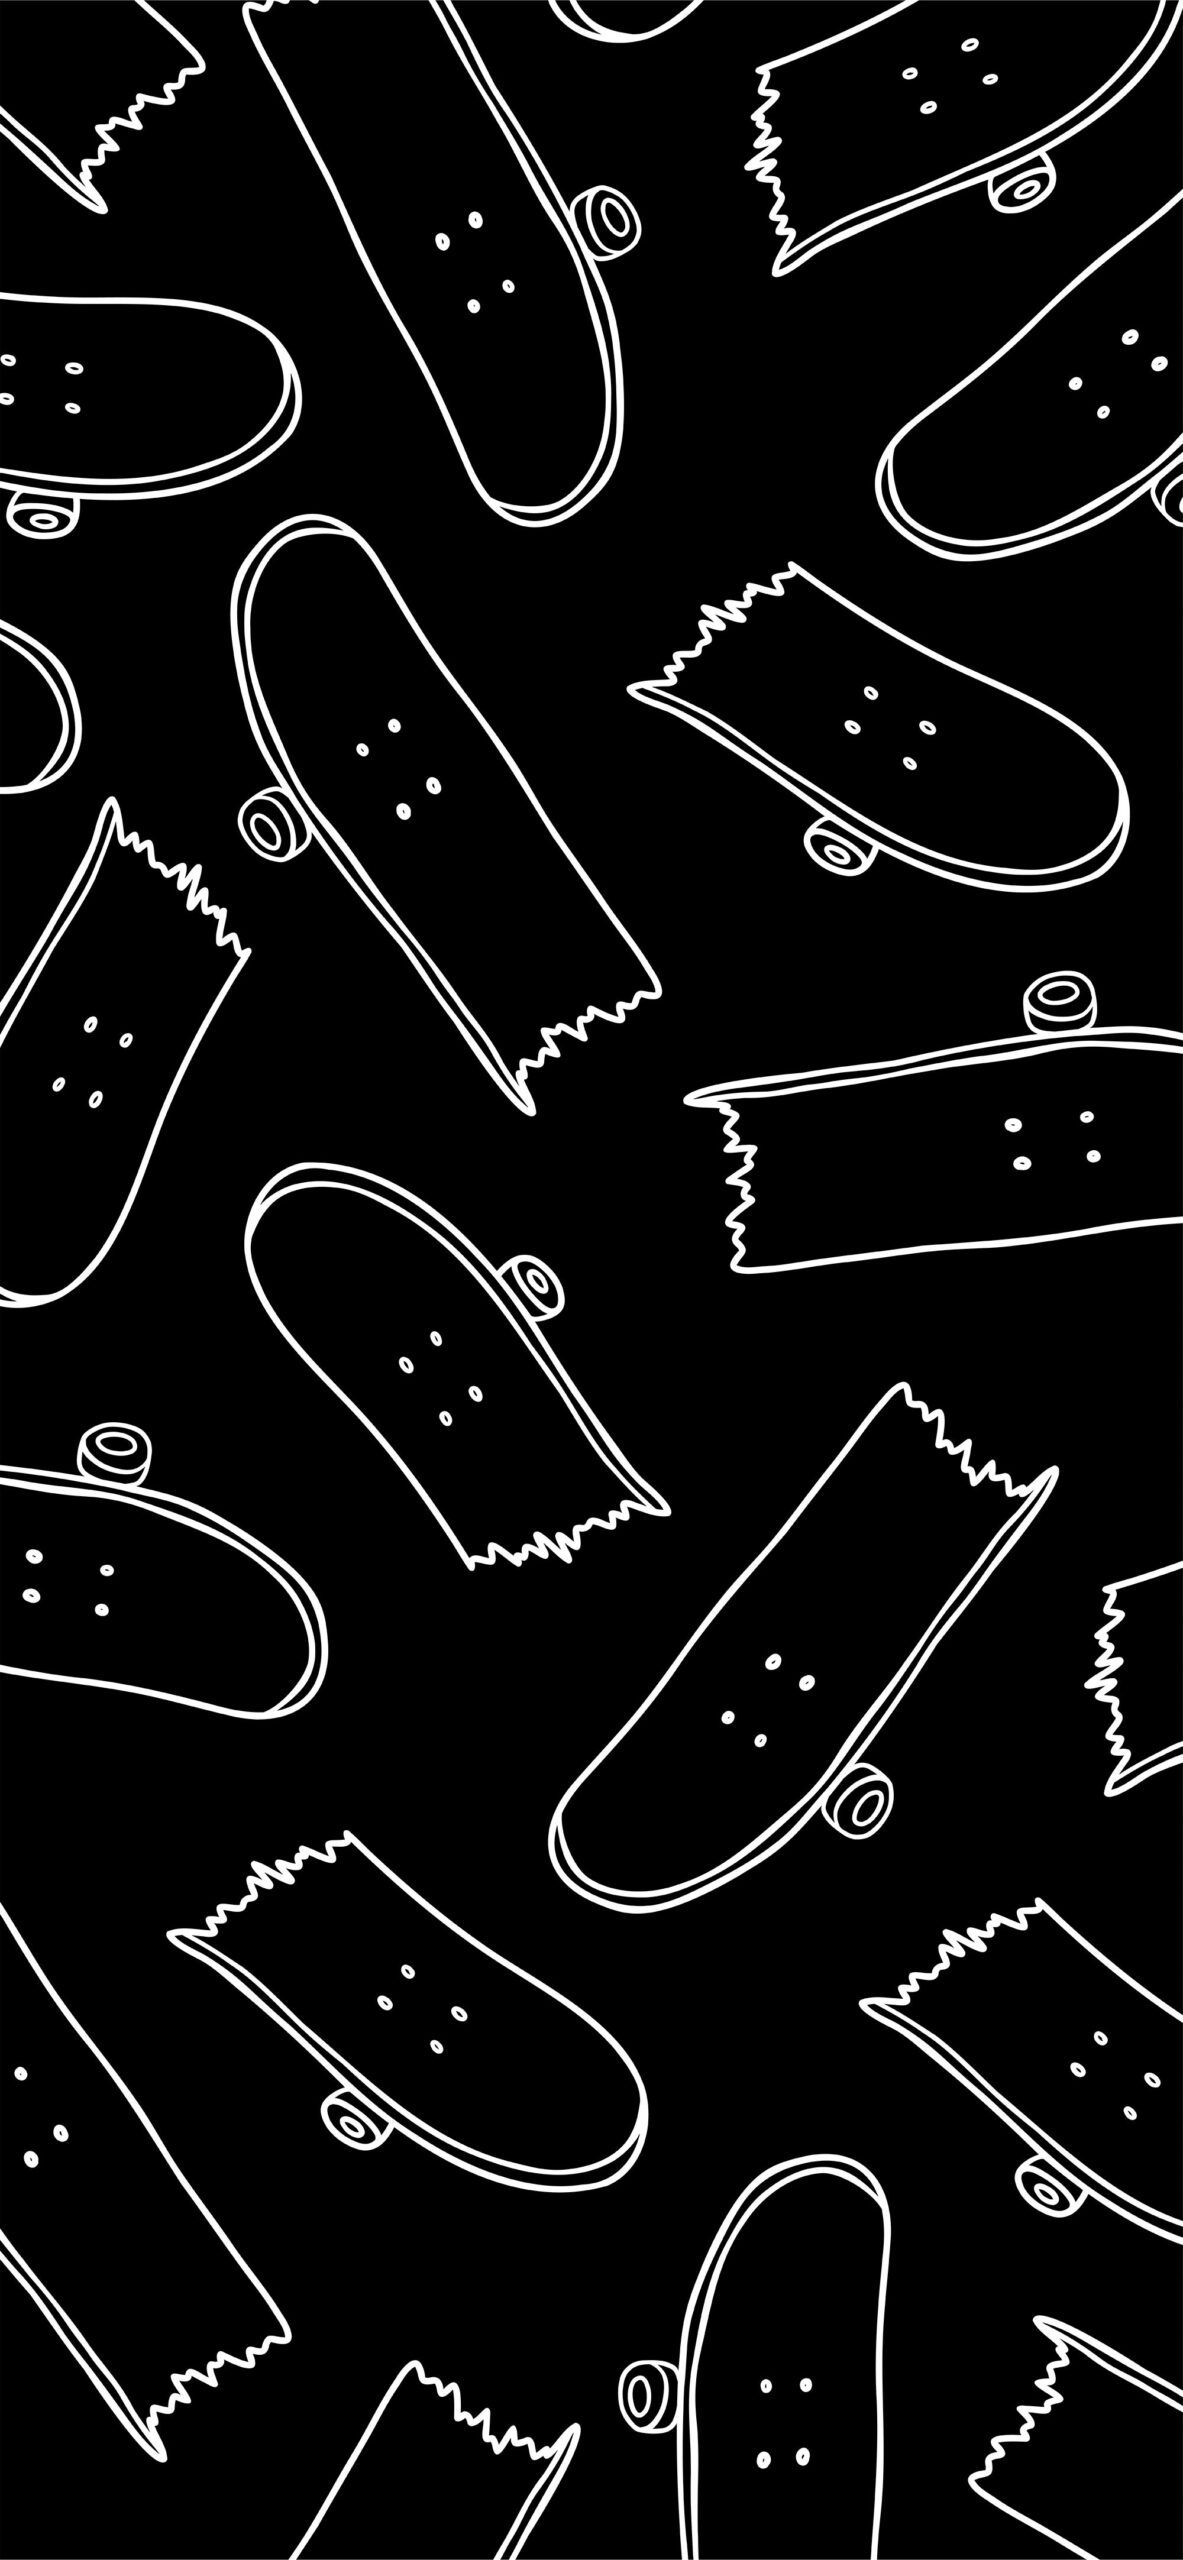 Black and white pattern of broken skateboards - Skate